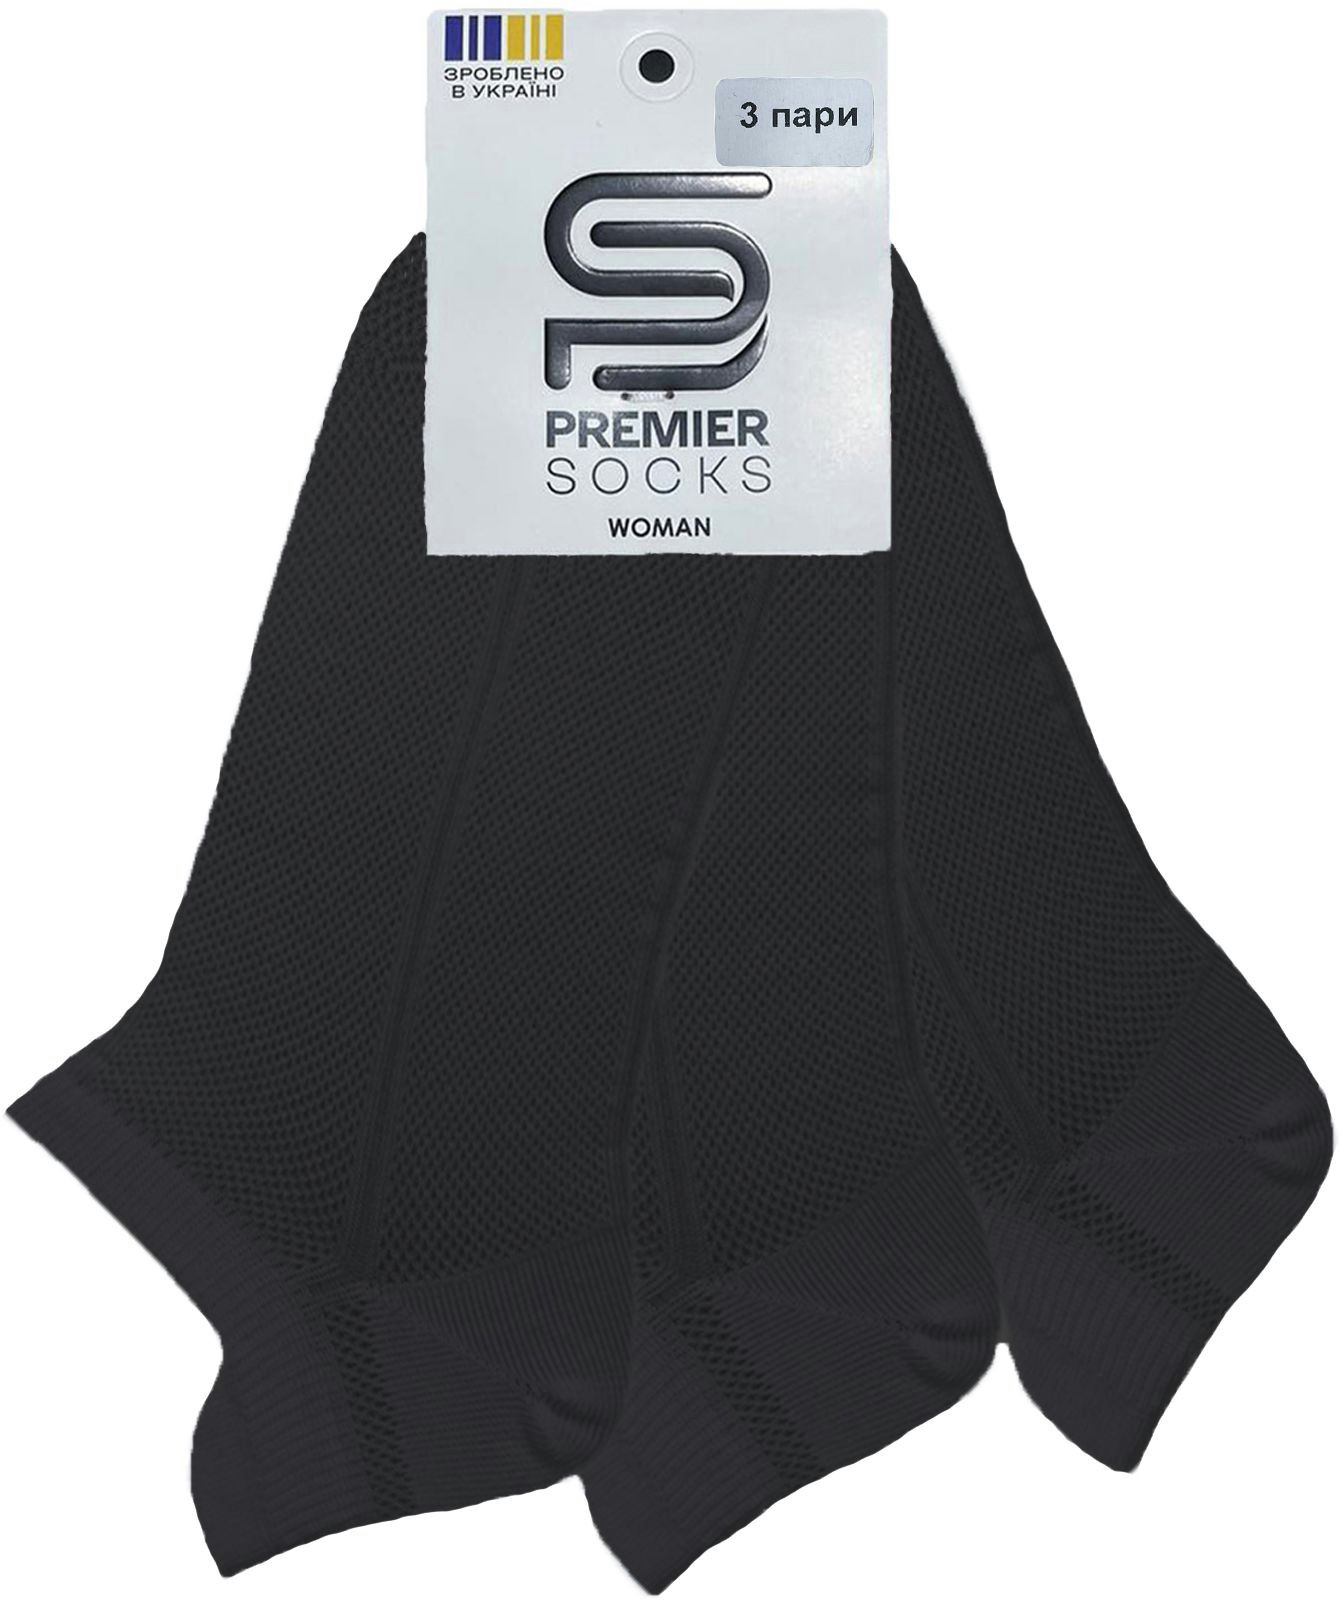 Набір жіночих шкарпеток Premier Socks 36-40 3 пари чорні (4820163319254)фото3